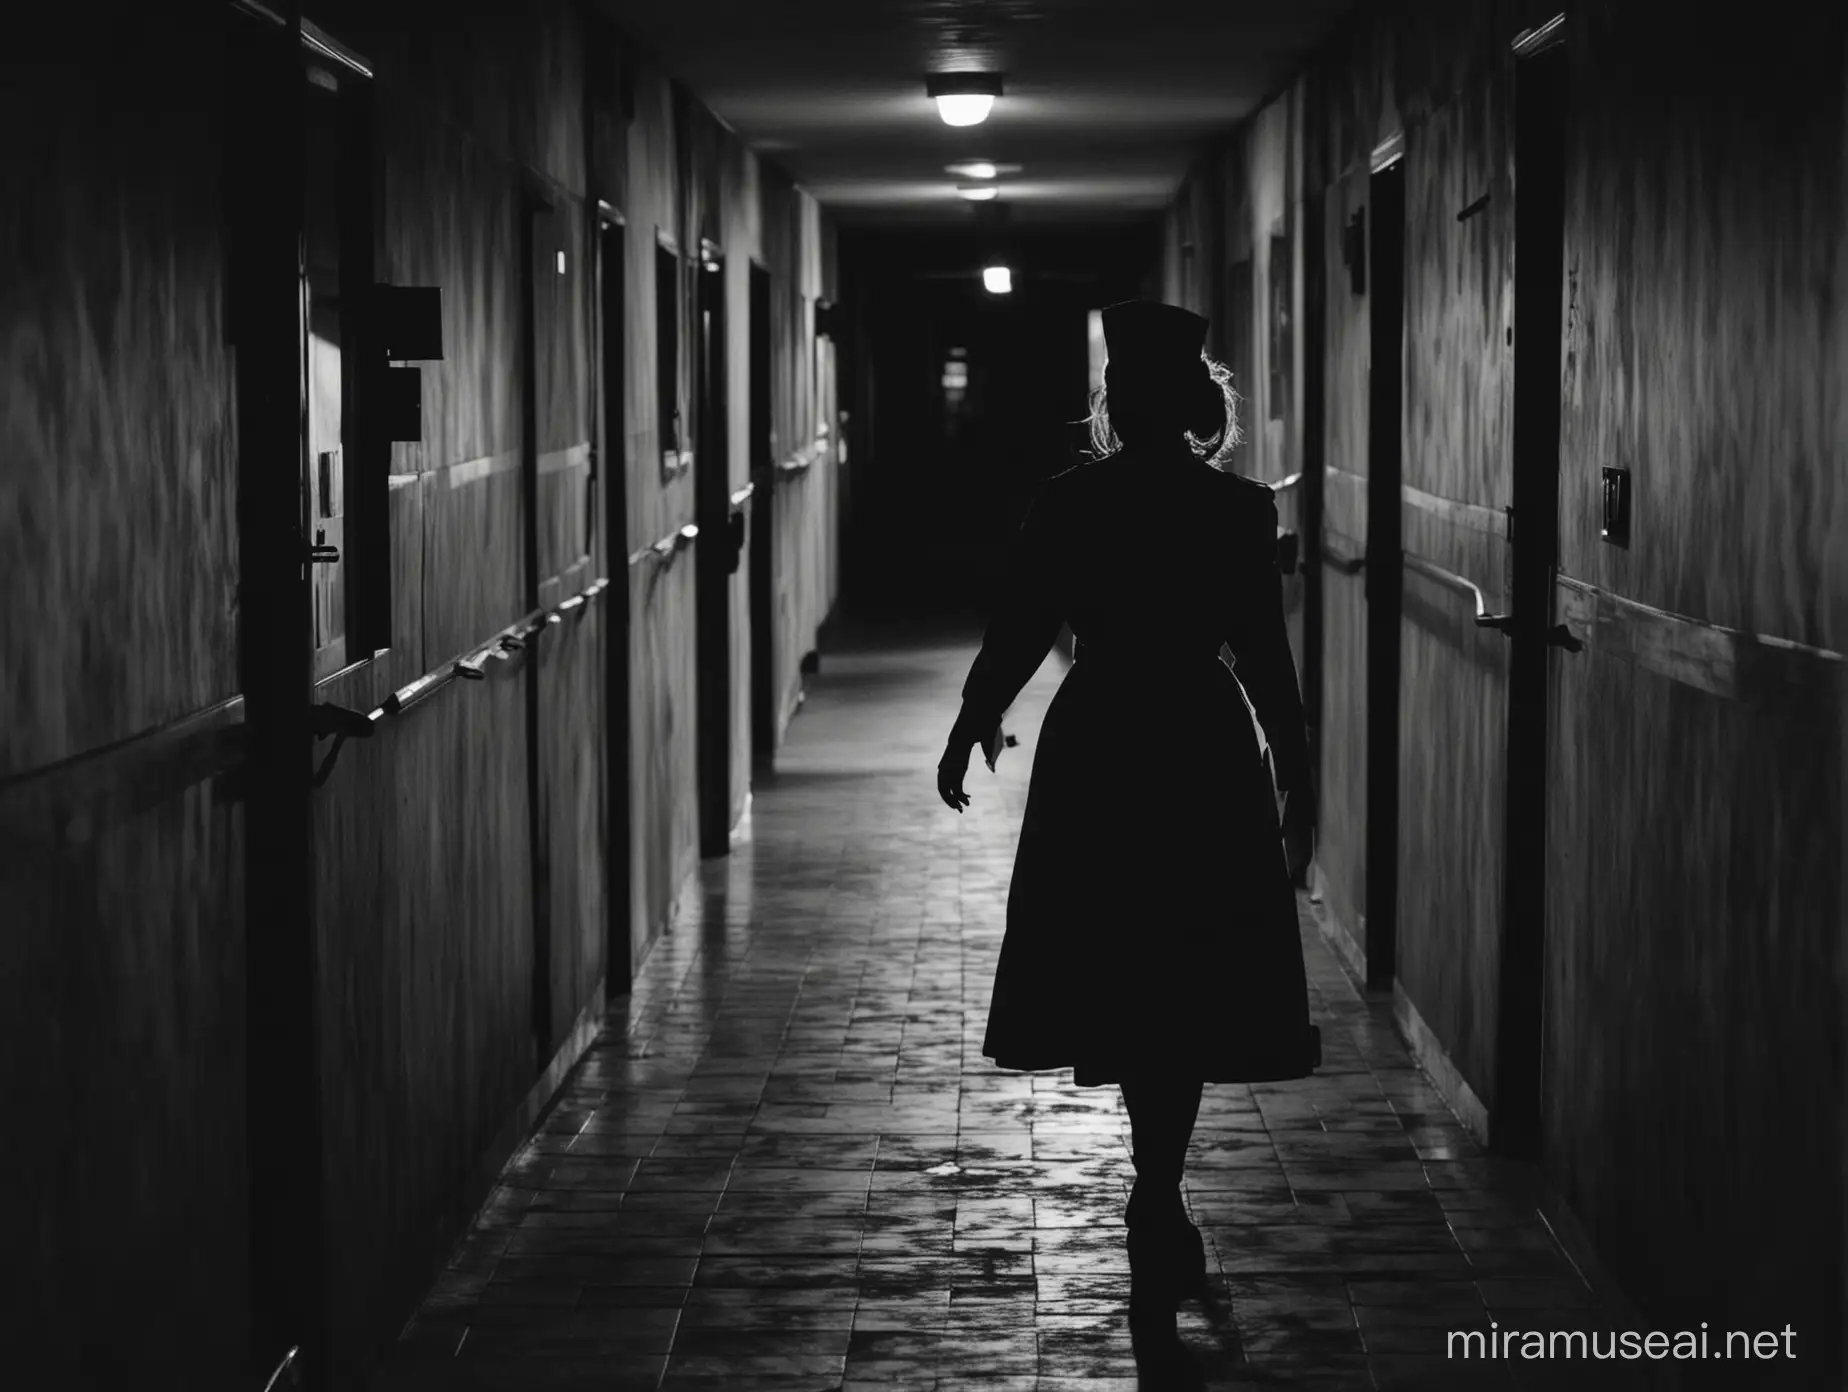 Silueta de una enfermera con uniforme antiguo parada en un pasillo oscuro de un hospital en la noche